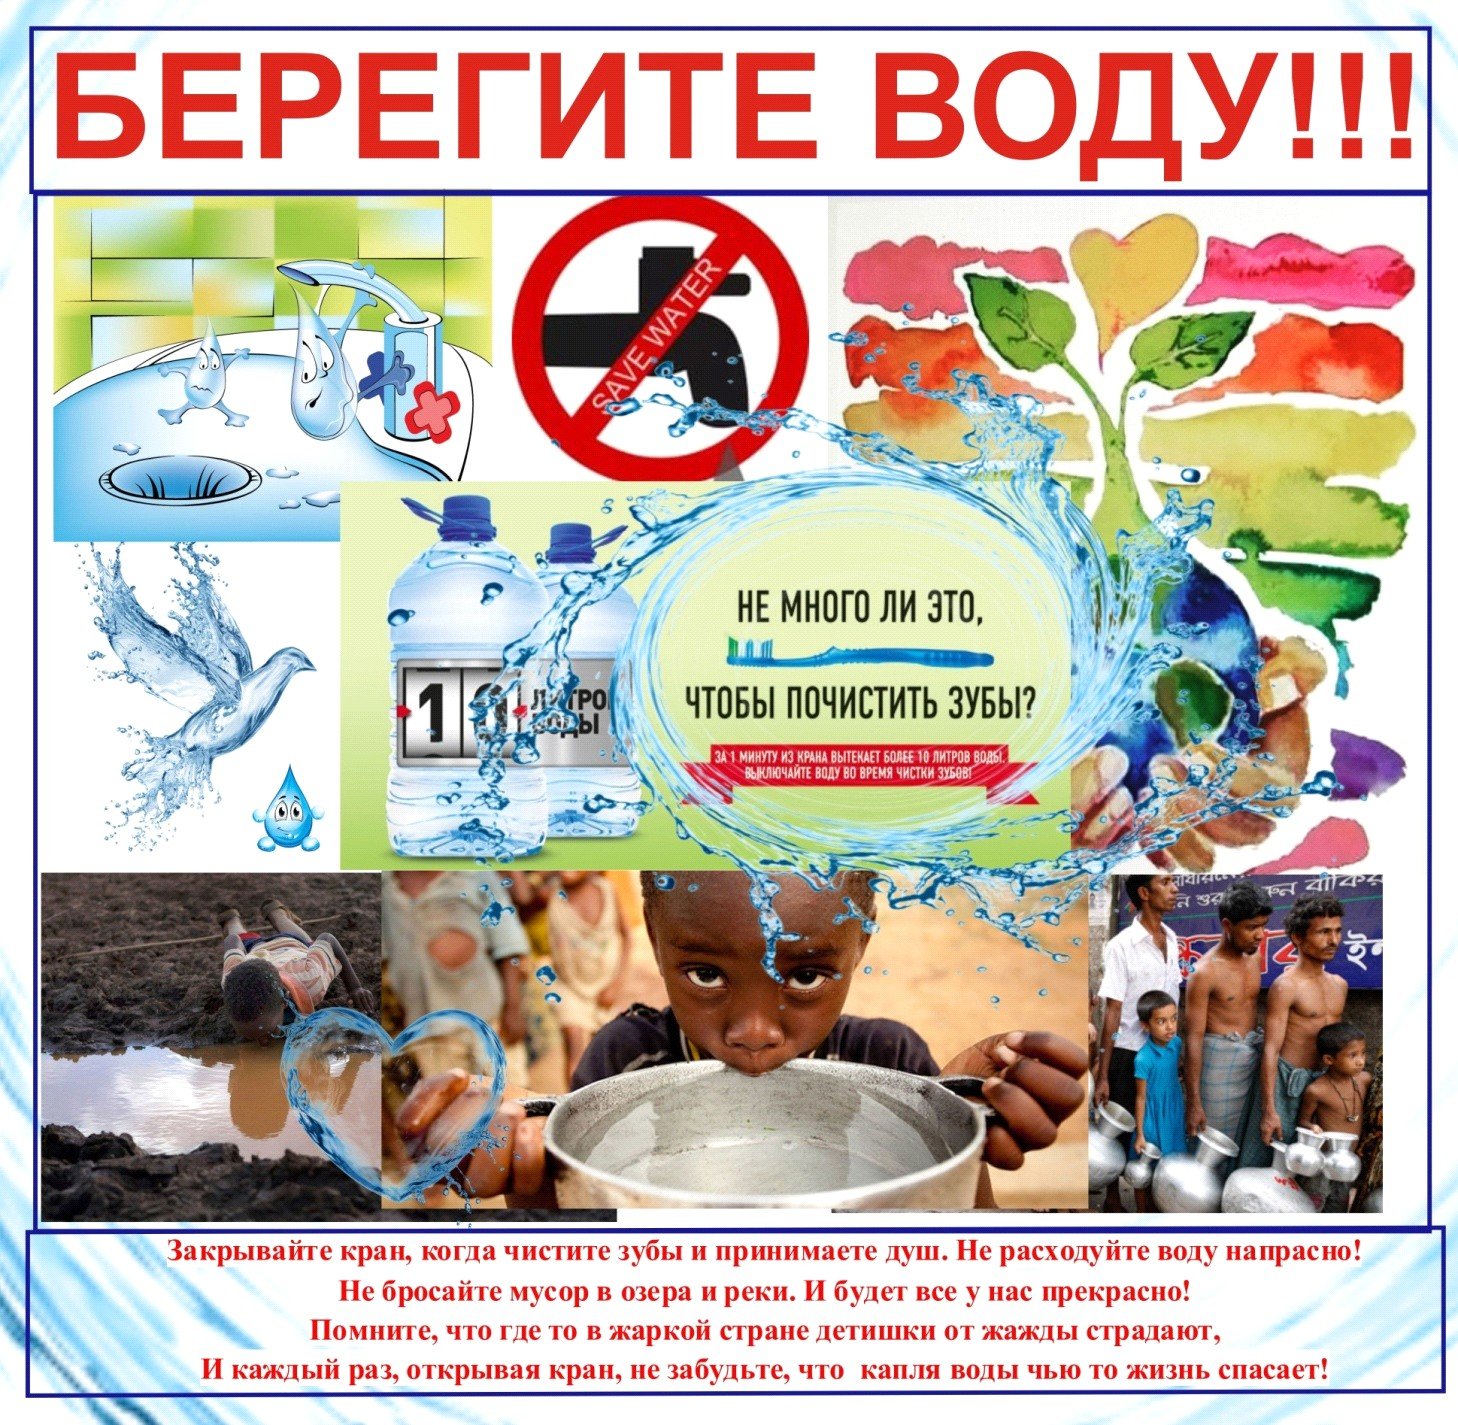 Охрана питьевой воды. Берегите воду. Плакат за чистую воду. Памятка береги воду. Плакат беречь воду.